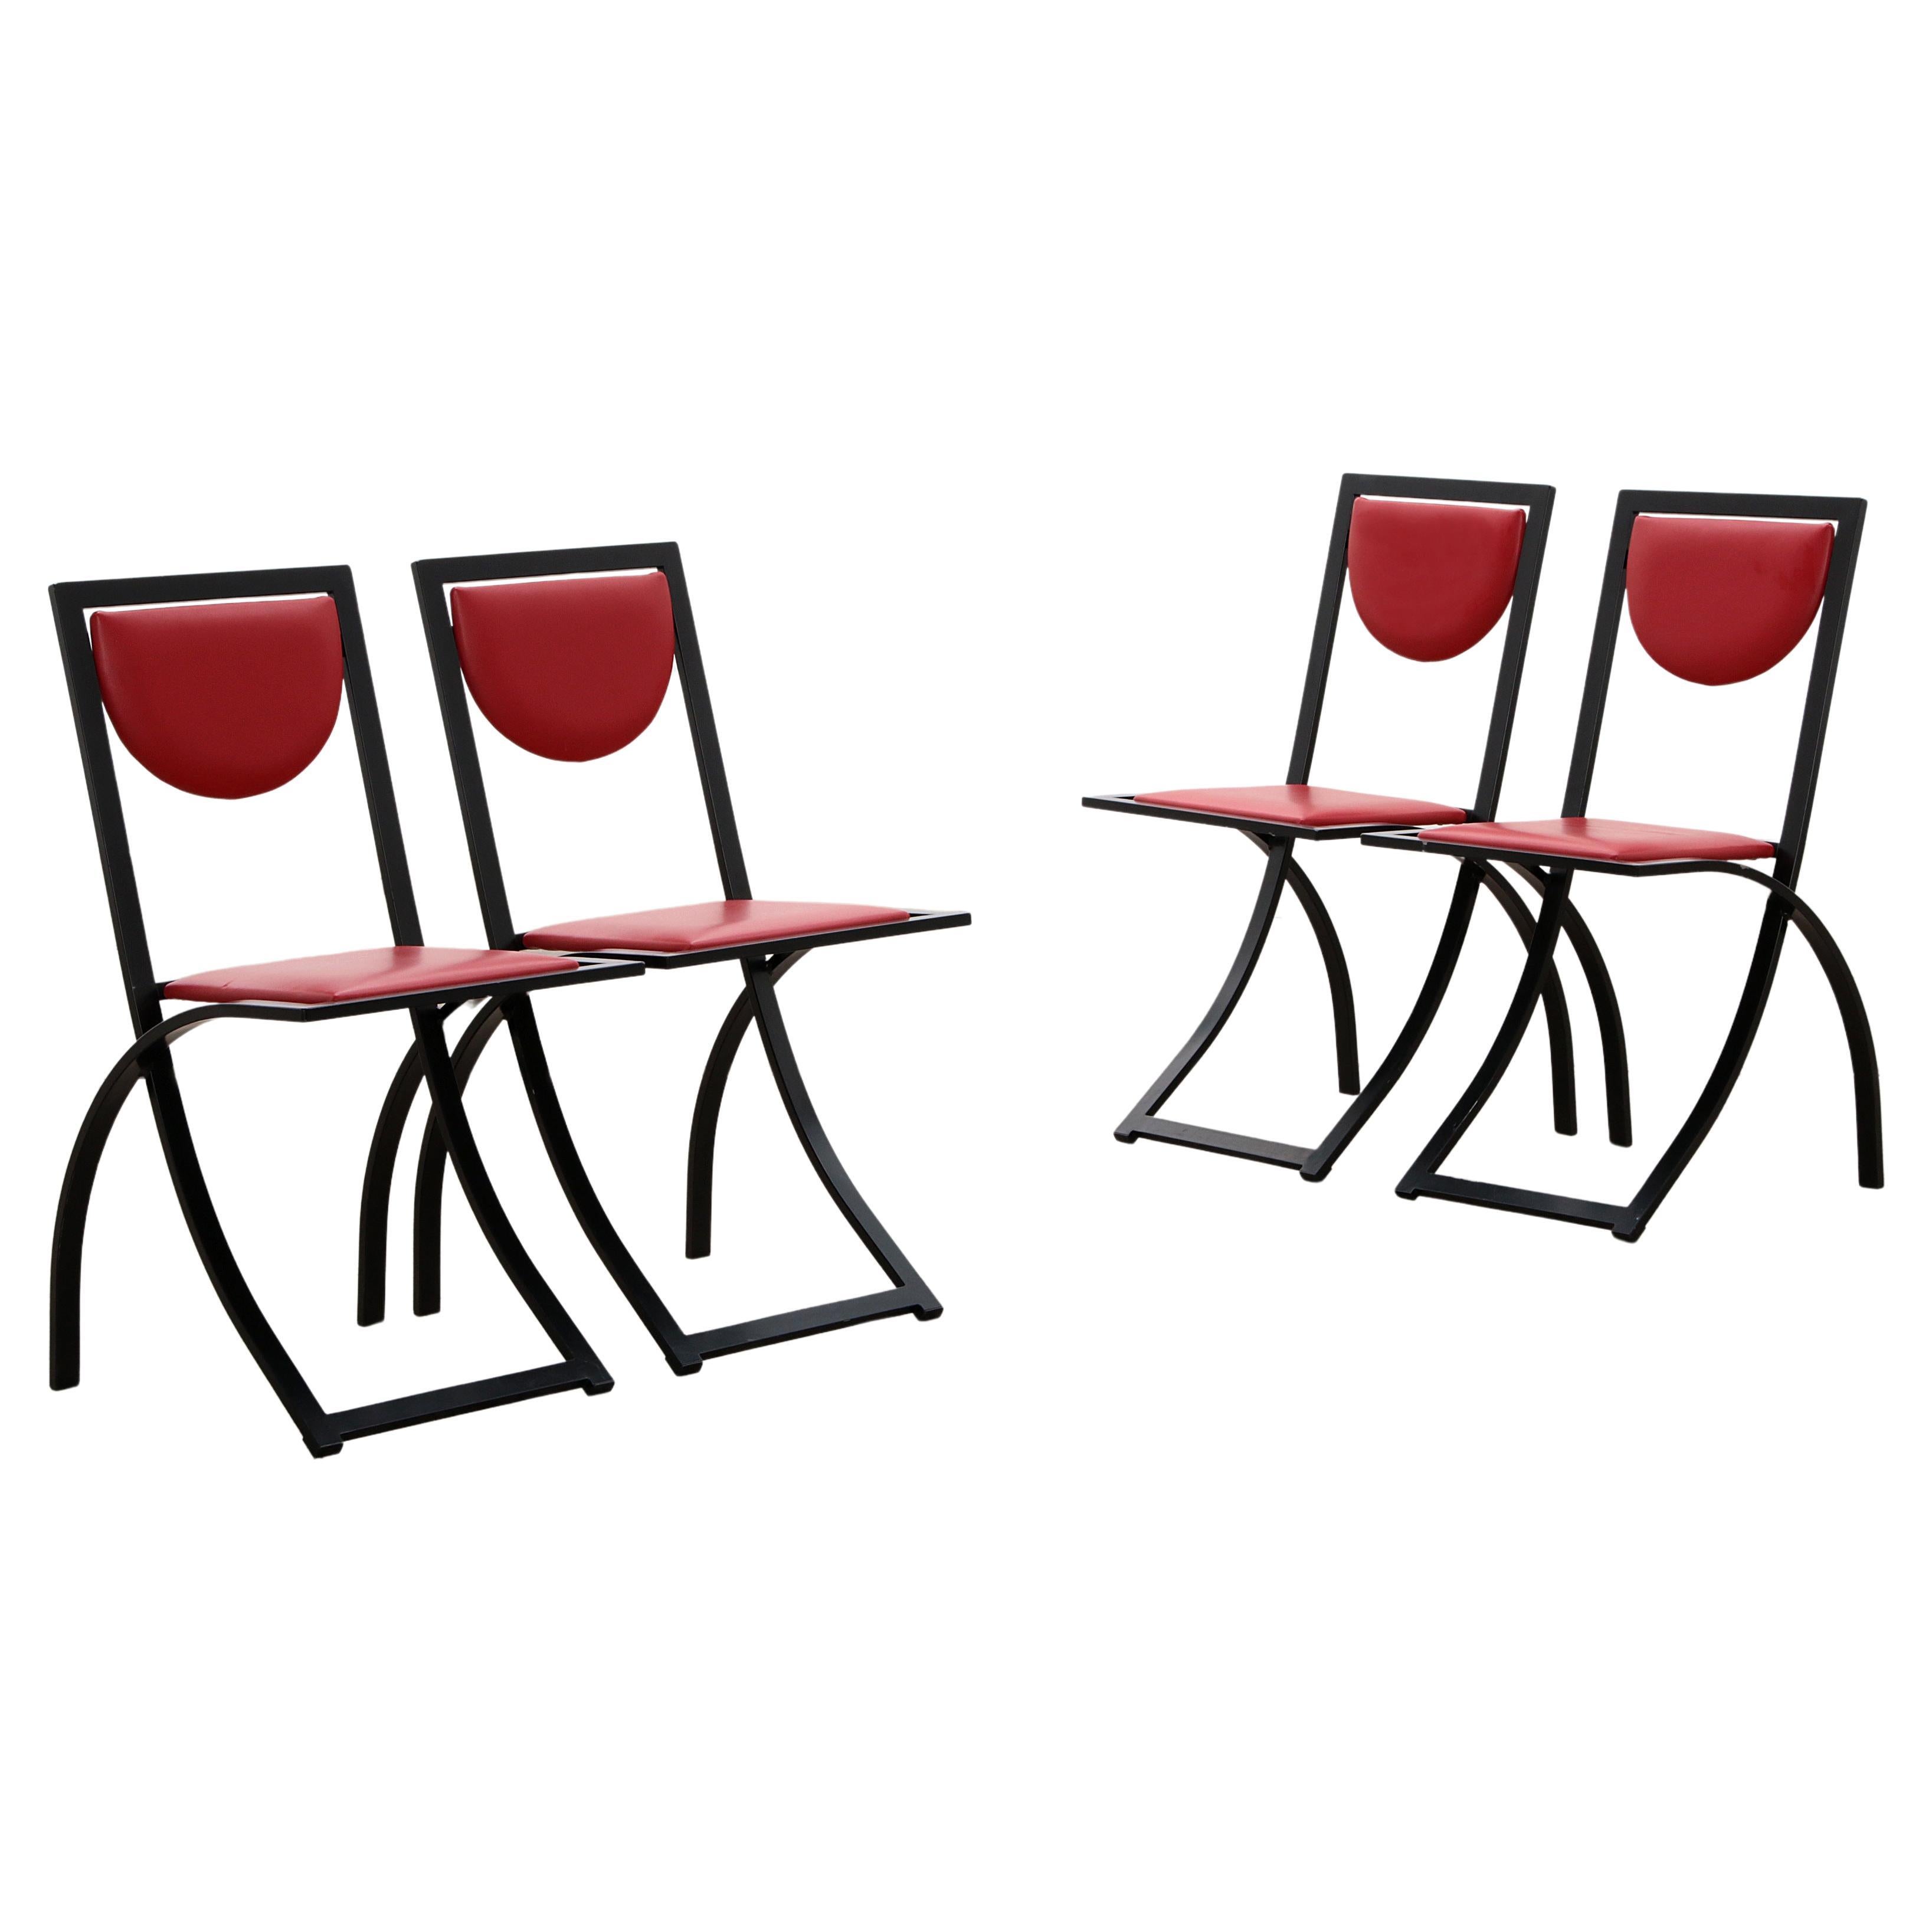 Vintage Sinus-Stühle von Karl Friedrich Förster - 4er-Set